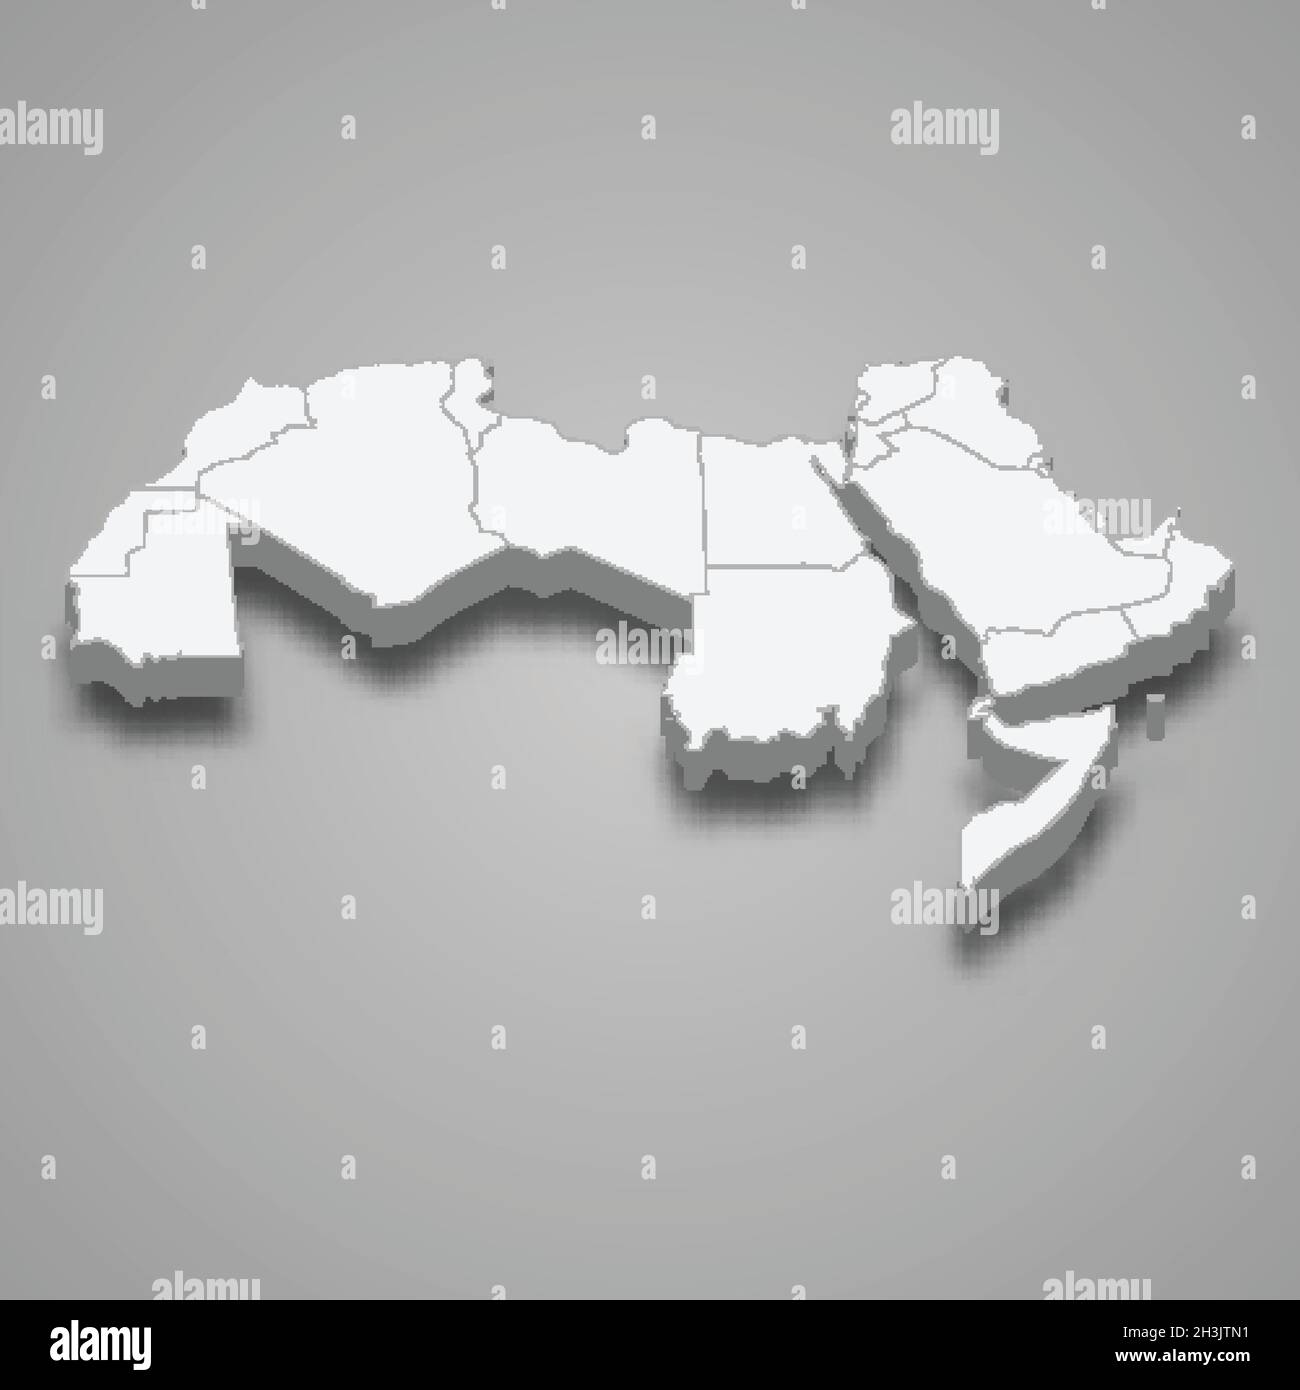 Mappa isometrica 3d della regione del mondo arabo, isolata con illustrazione vettoriale ombra Illustrazione Vettoriale